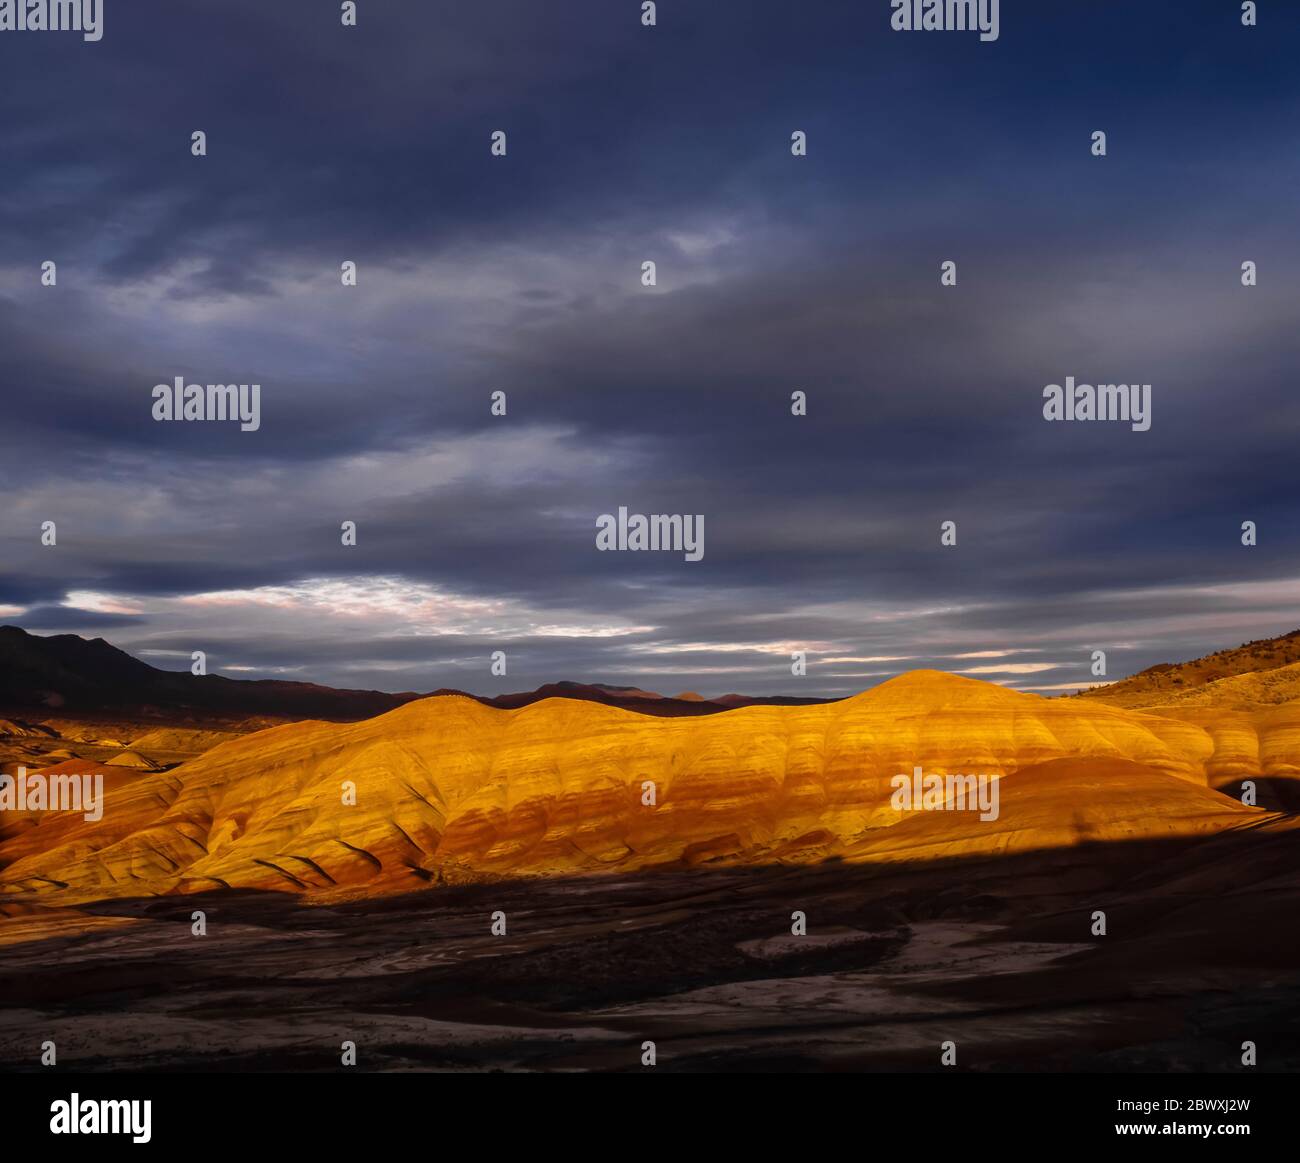 Dramatisches Sonnenuntergangslicht auf den Painted Hills, einer Einheit des John Day Fossil Beds National Monument, Oregon, USA Stockfoto